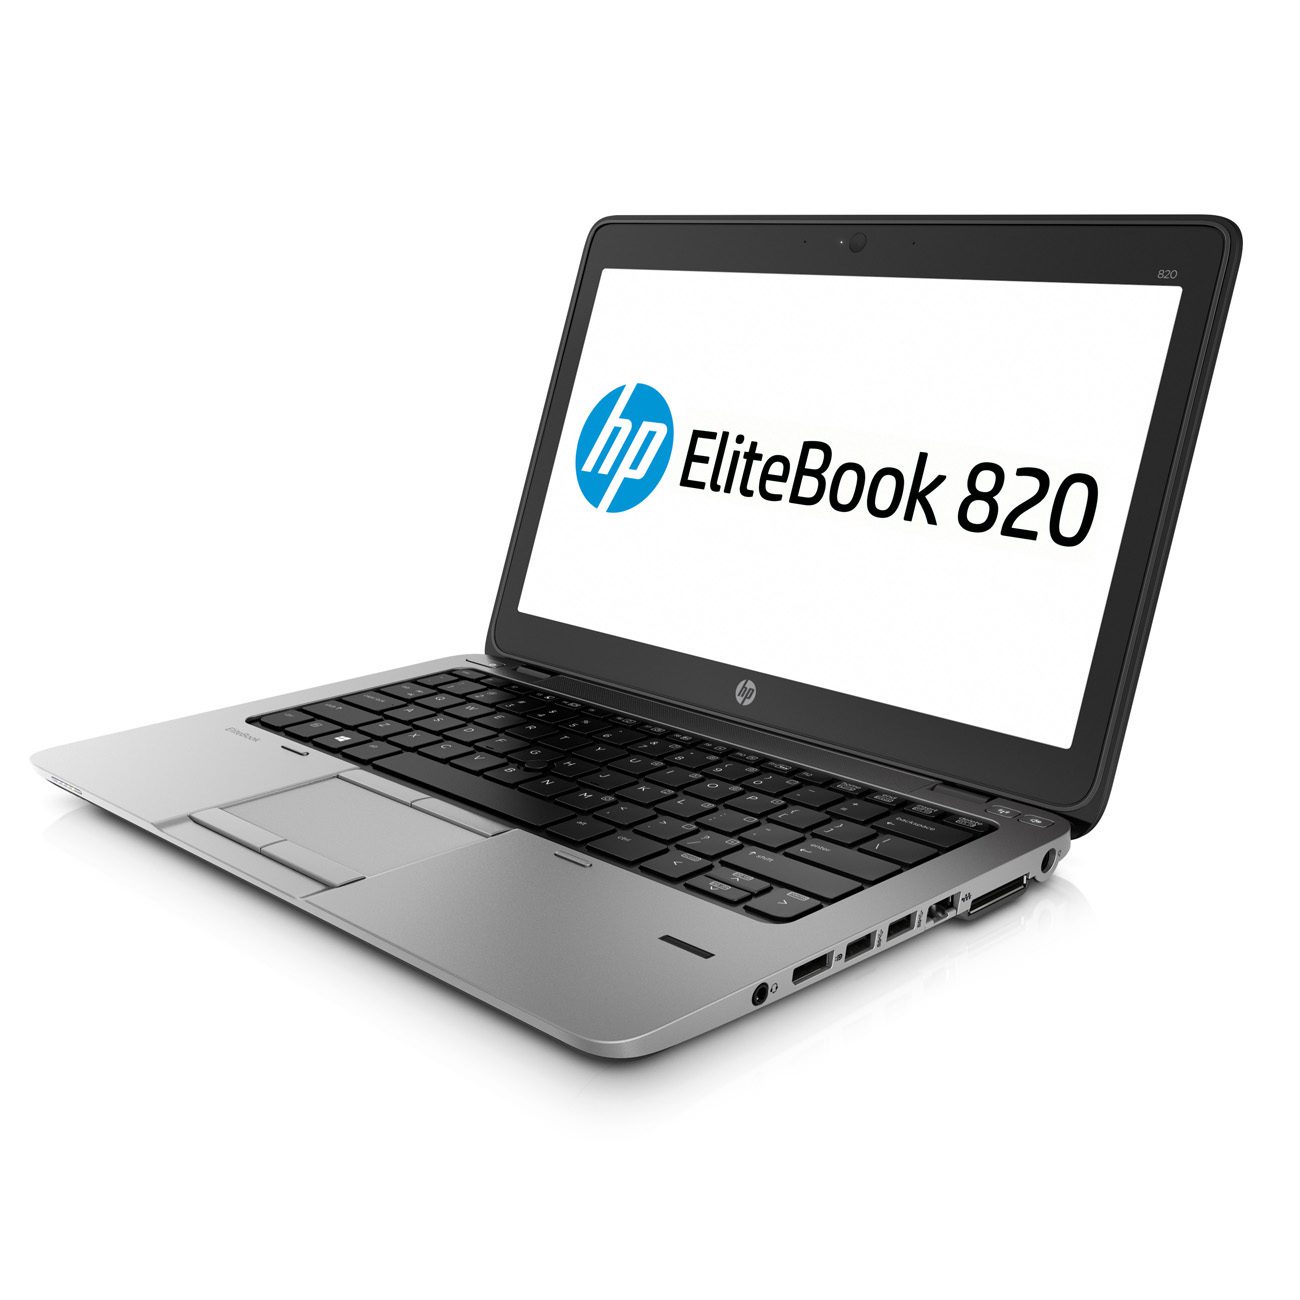 Notebook HP EliteBook 820 G1 Core i7-4600U 8Gb 256Gb SSD 12.5